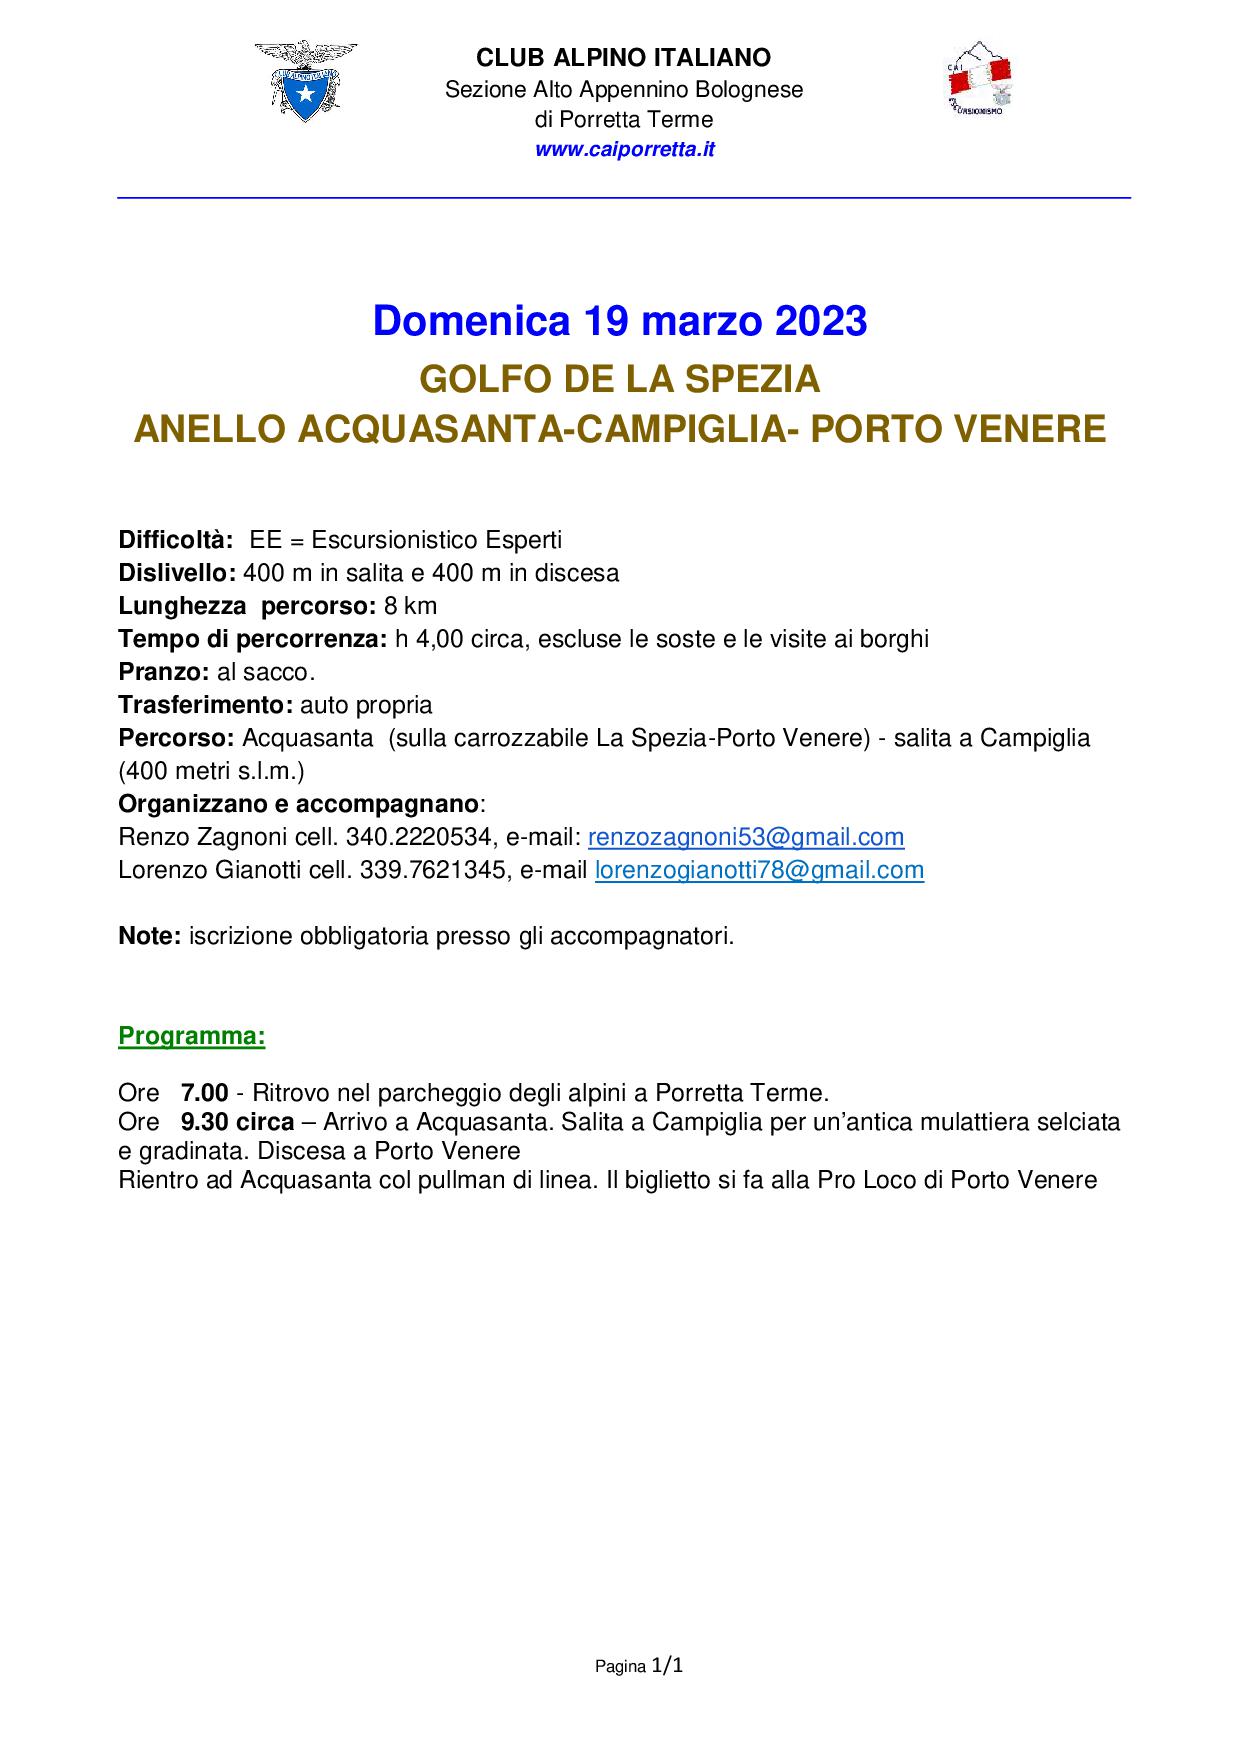 Domenica 19 marzo 2023 Liguria il Golfo de La Spezia